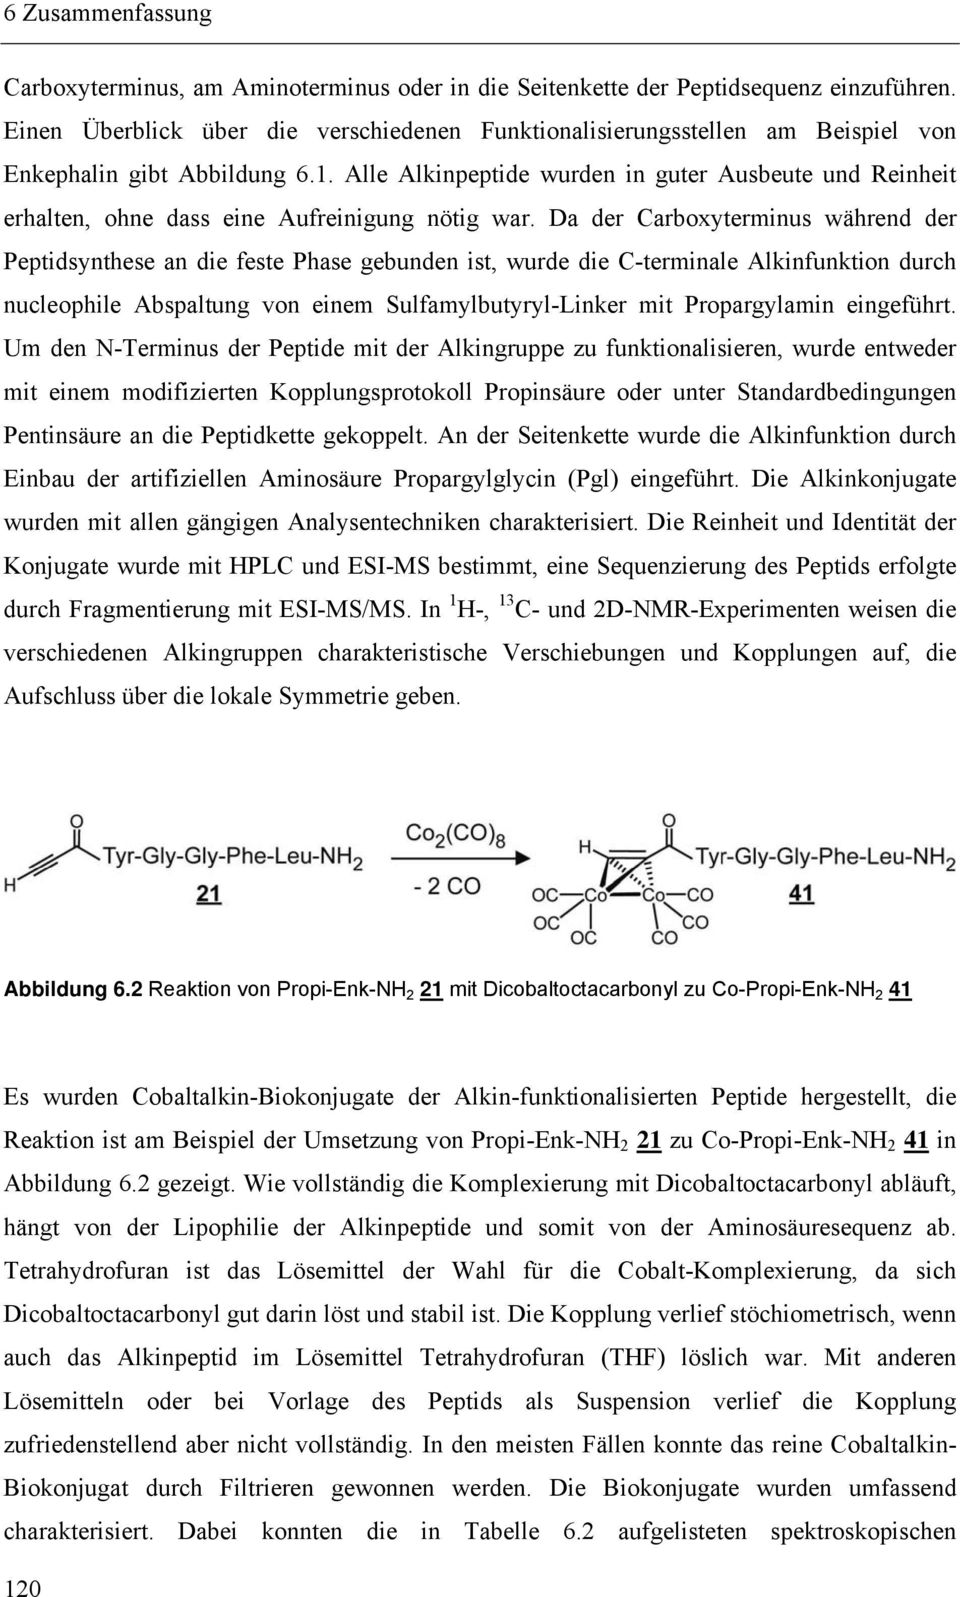 Da der Carboxyterminus während der Peptidsynthese an die feste Phase gebunden ist, wurde die C-terminale Alkinfunktion durch nucleophile Abspaltung von einem Sulfamylbutyryl-Linker mit Propargylamin